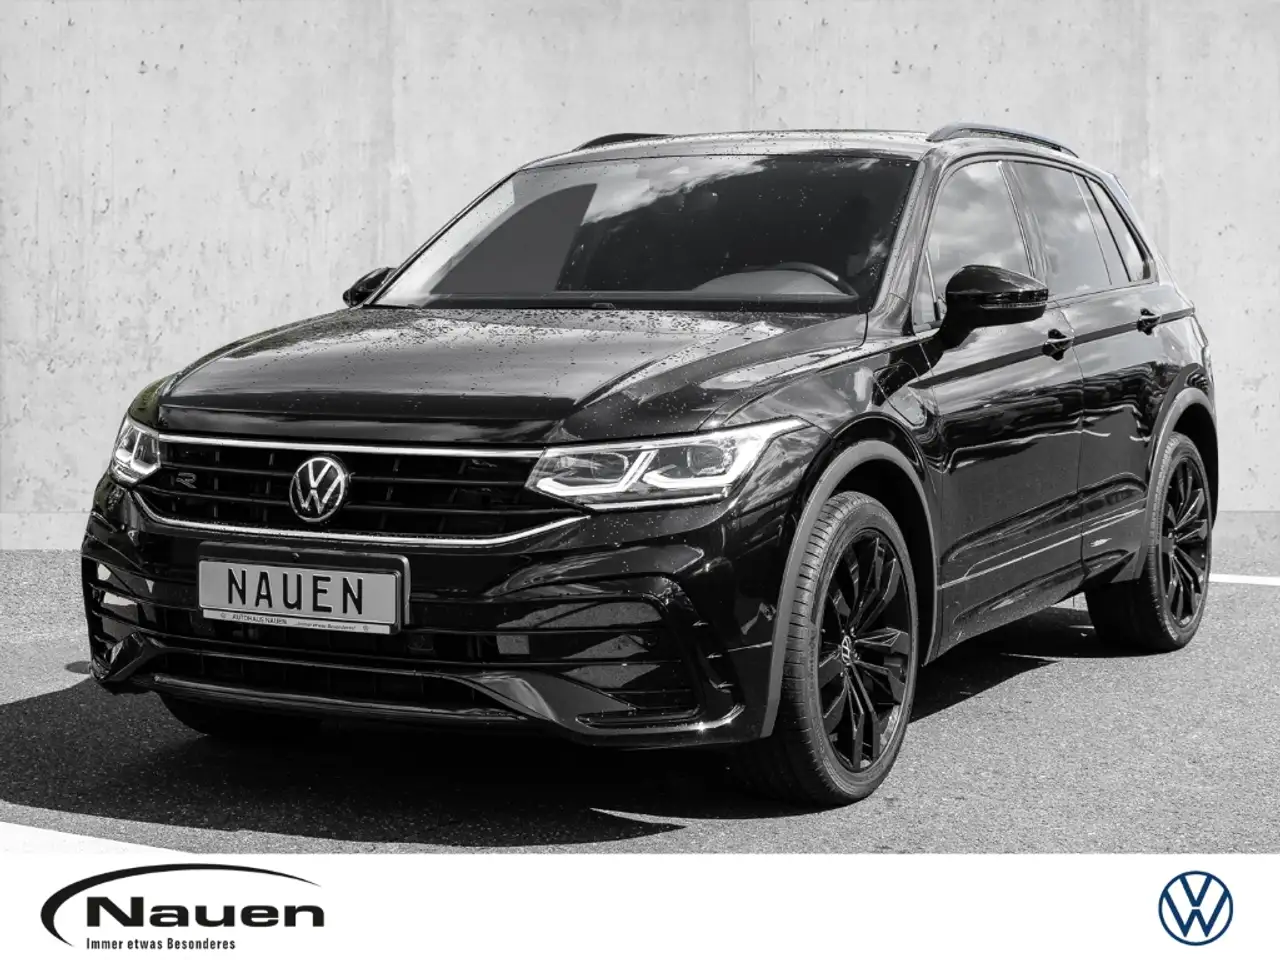 Volkswagen Tiguan SUV/4x4/Pick-up in Zwart demo in Meerbusch voor € 39.990,-